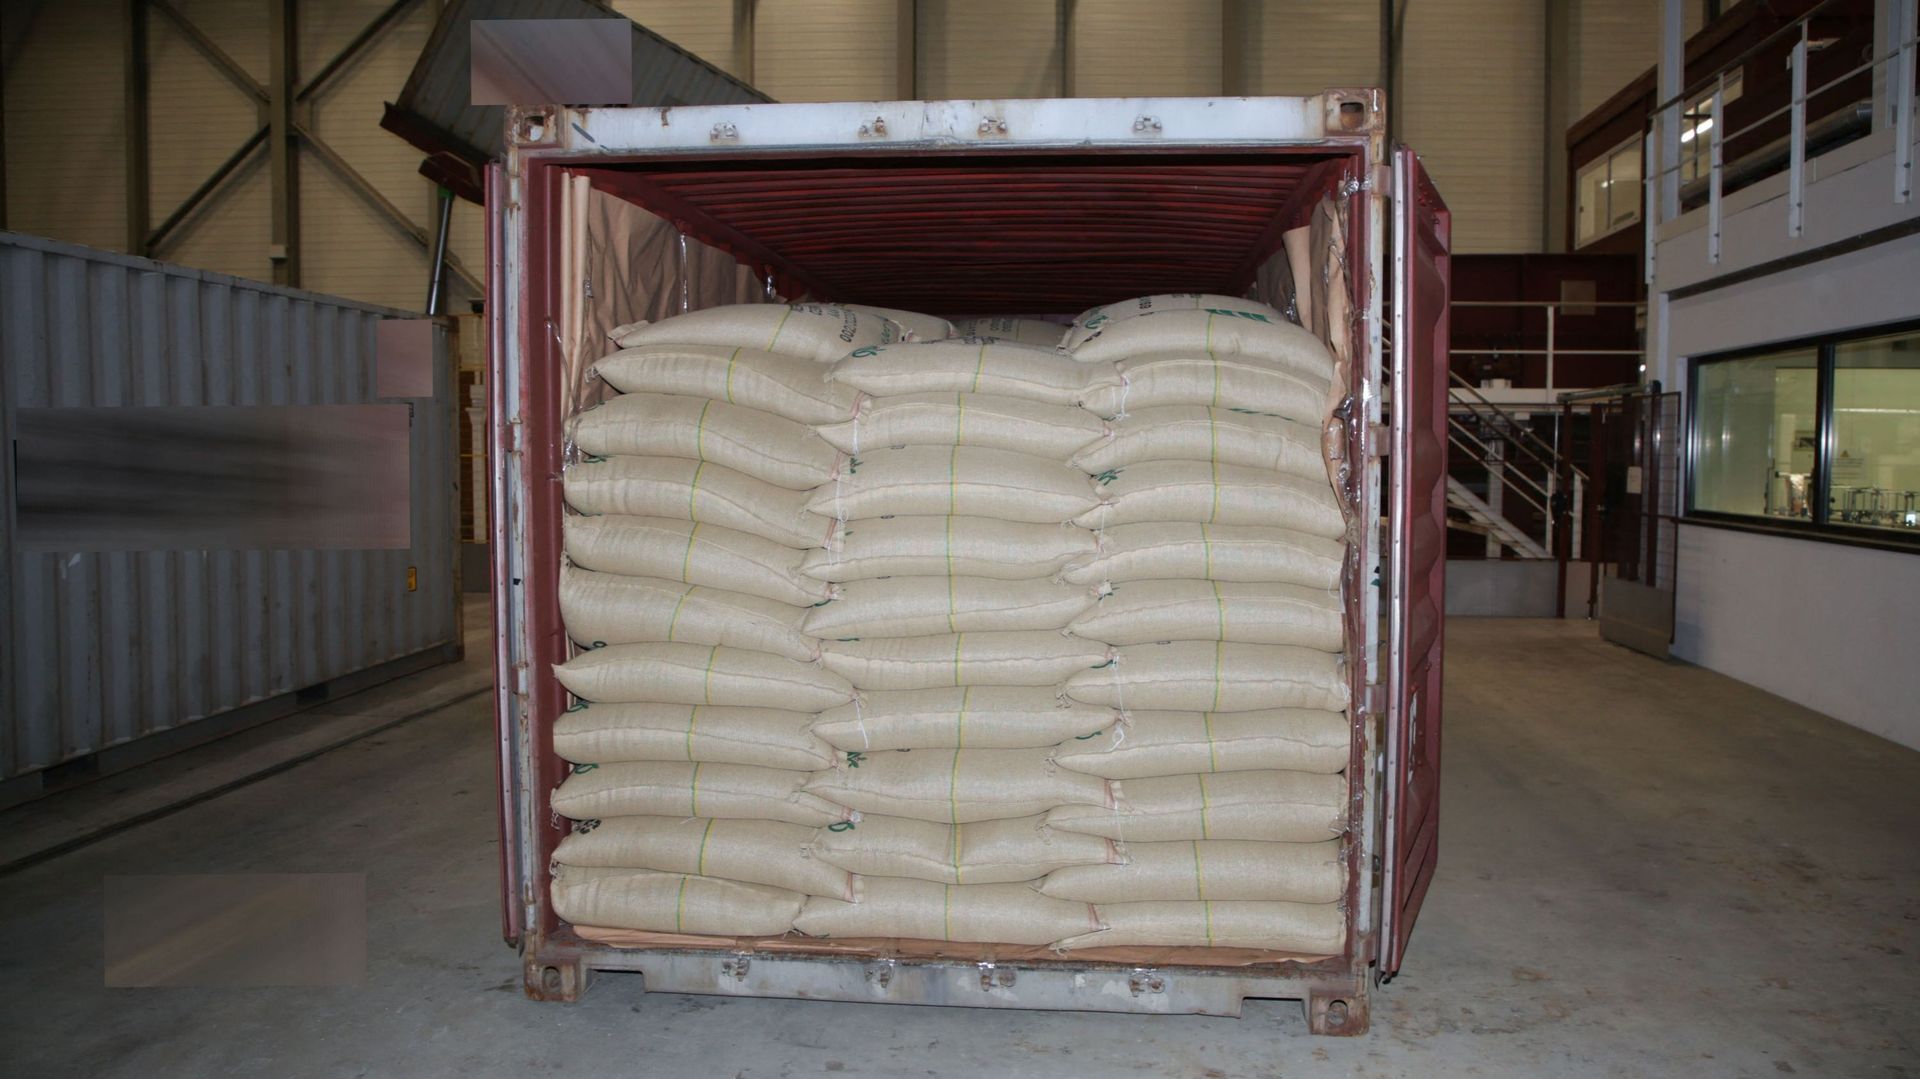 Cette photo, publiée par la police suisse du canton de Fribourg le 5 mai 2022, montre l’un des cinq conteneurs d’une cargaison de grains de café livrée à une usine Nespresso dans laquelle plus de 500 kilogrammes de cocaïne ont été trouvés.